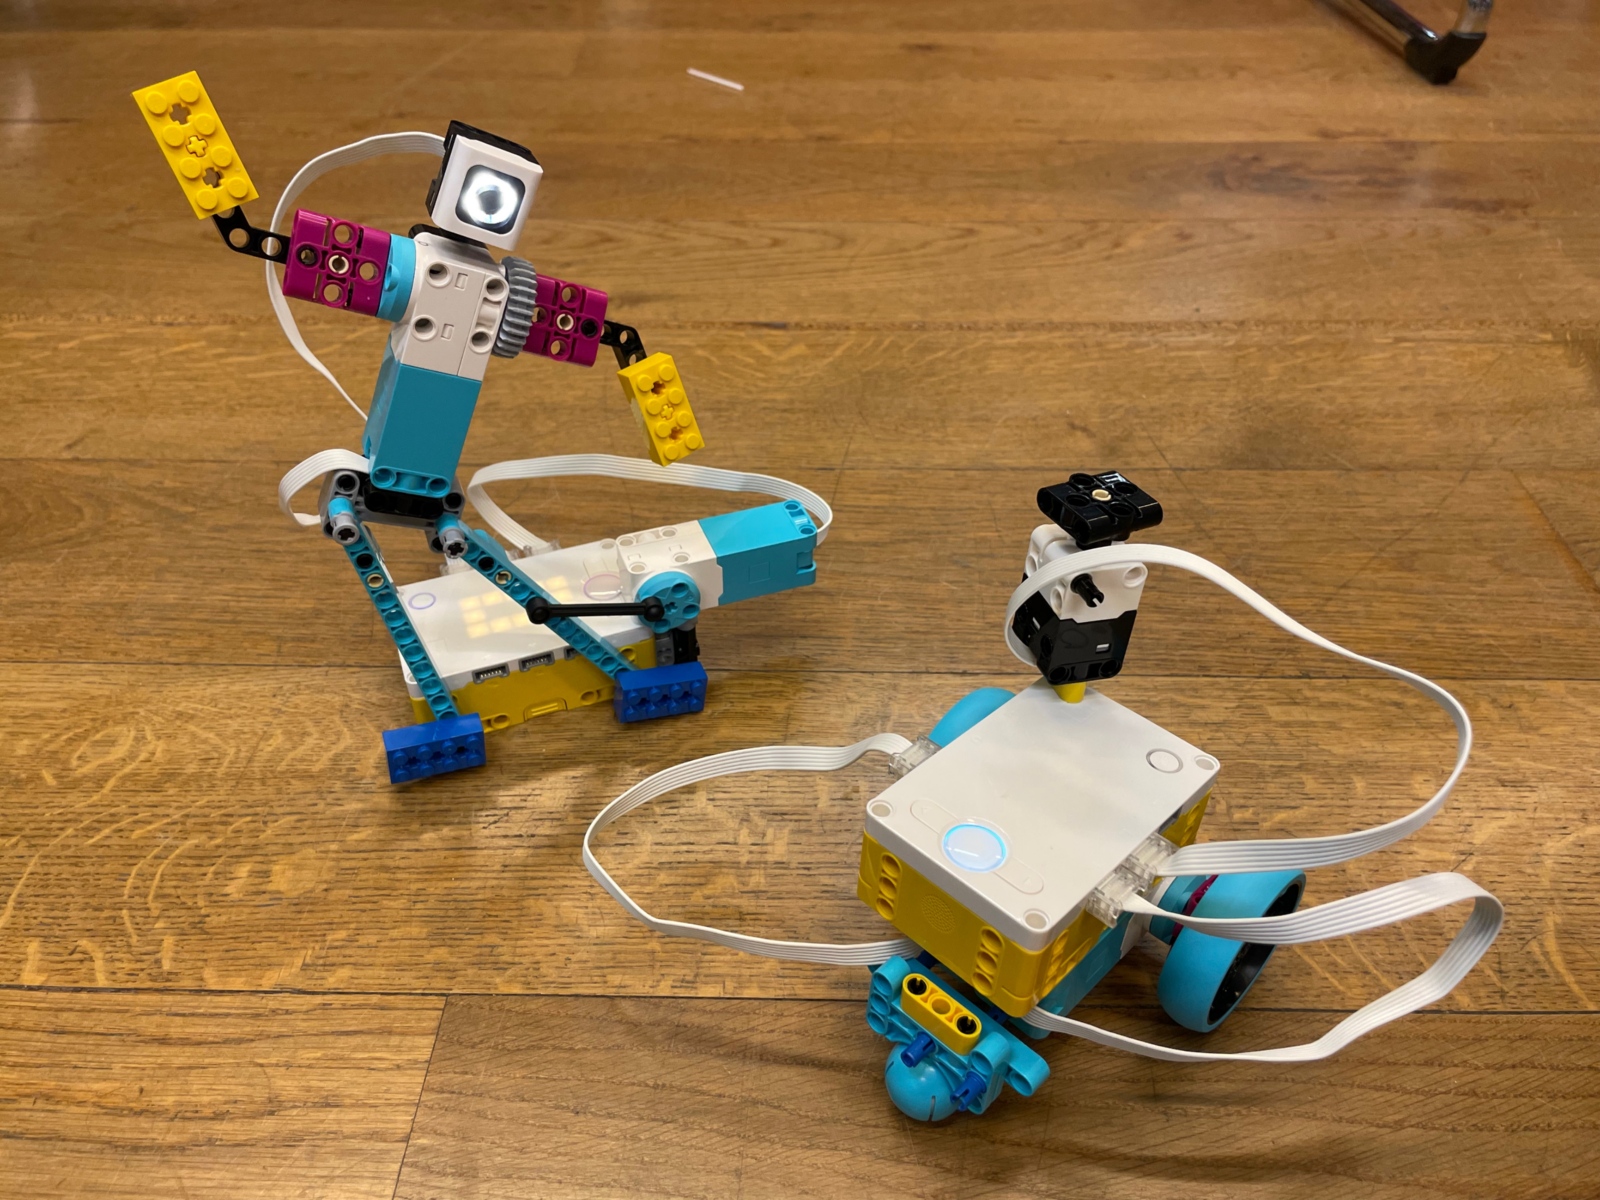 Lego-Roboter, die über Programmiersprachen gesteuert werden